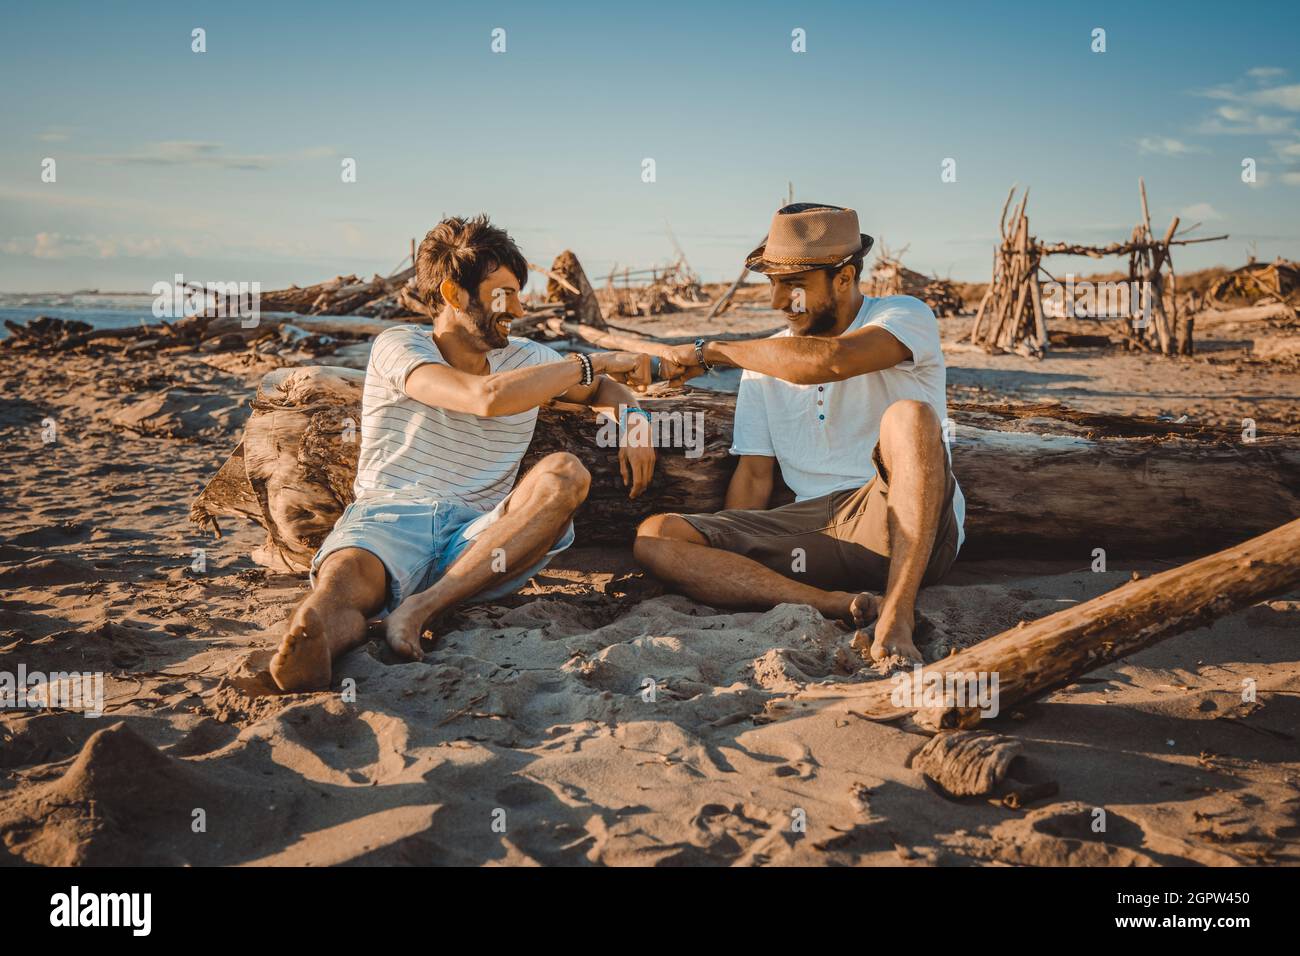 Deux garçons assis sur la plage se saluent les uns les autres avec leurs poings. Les jeunes ont fait des martelant leurs poings pour se saluer Banque D'Images